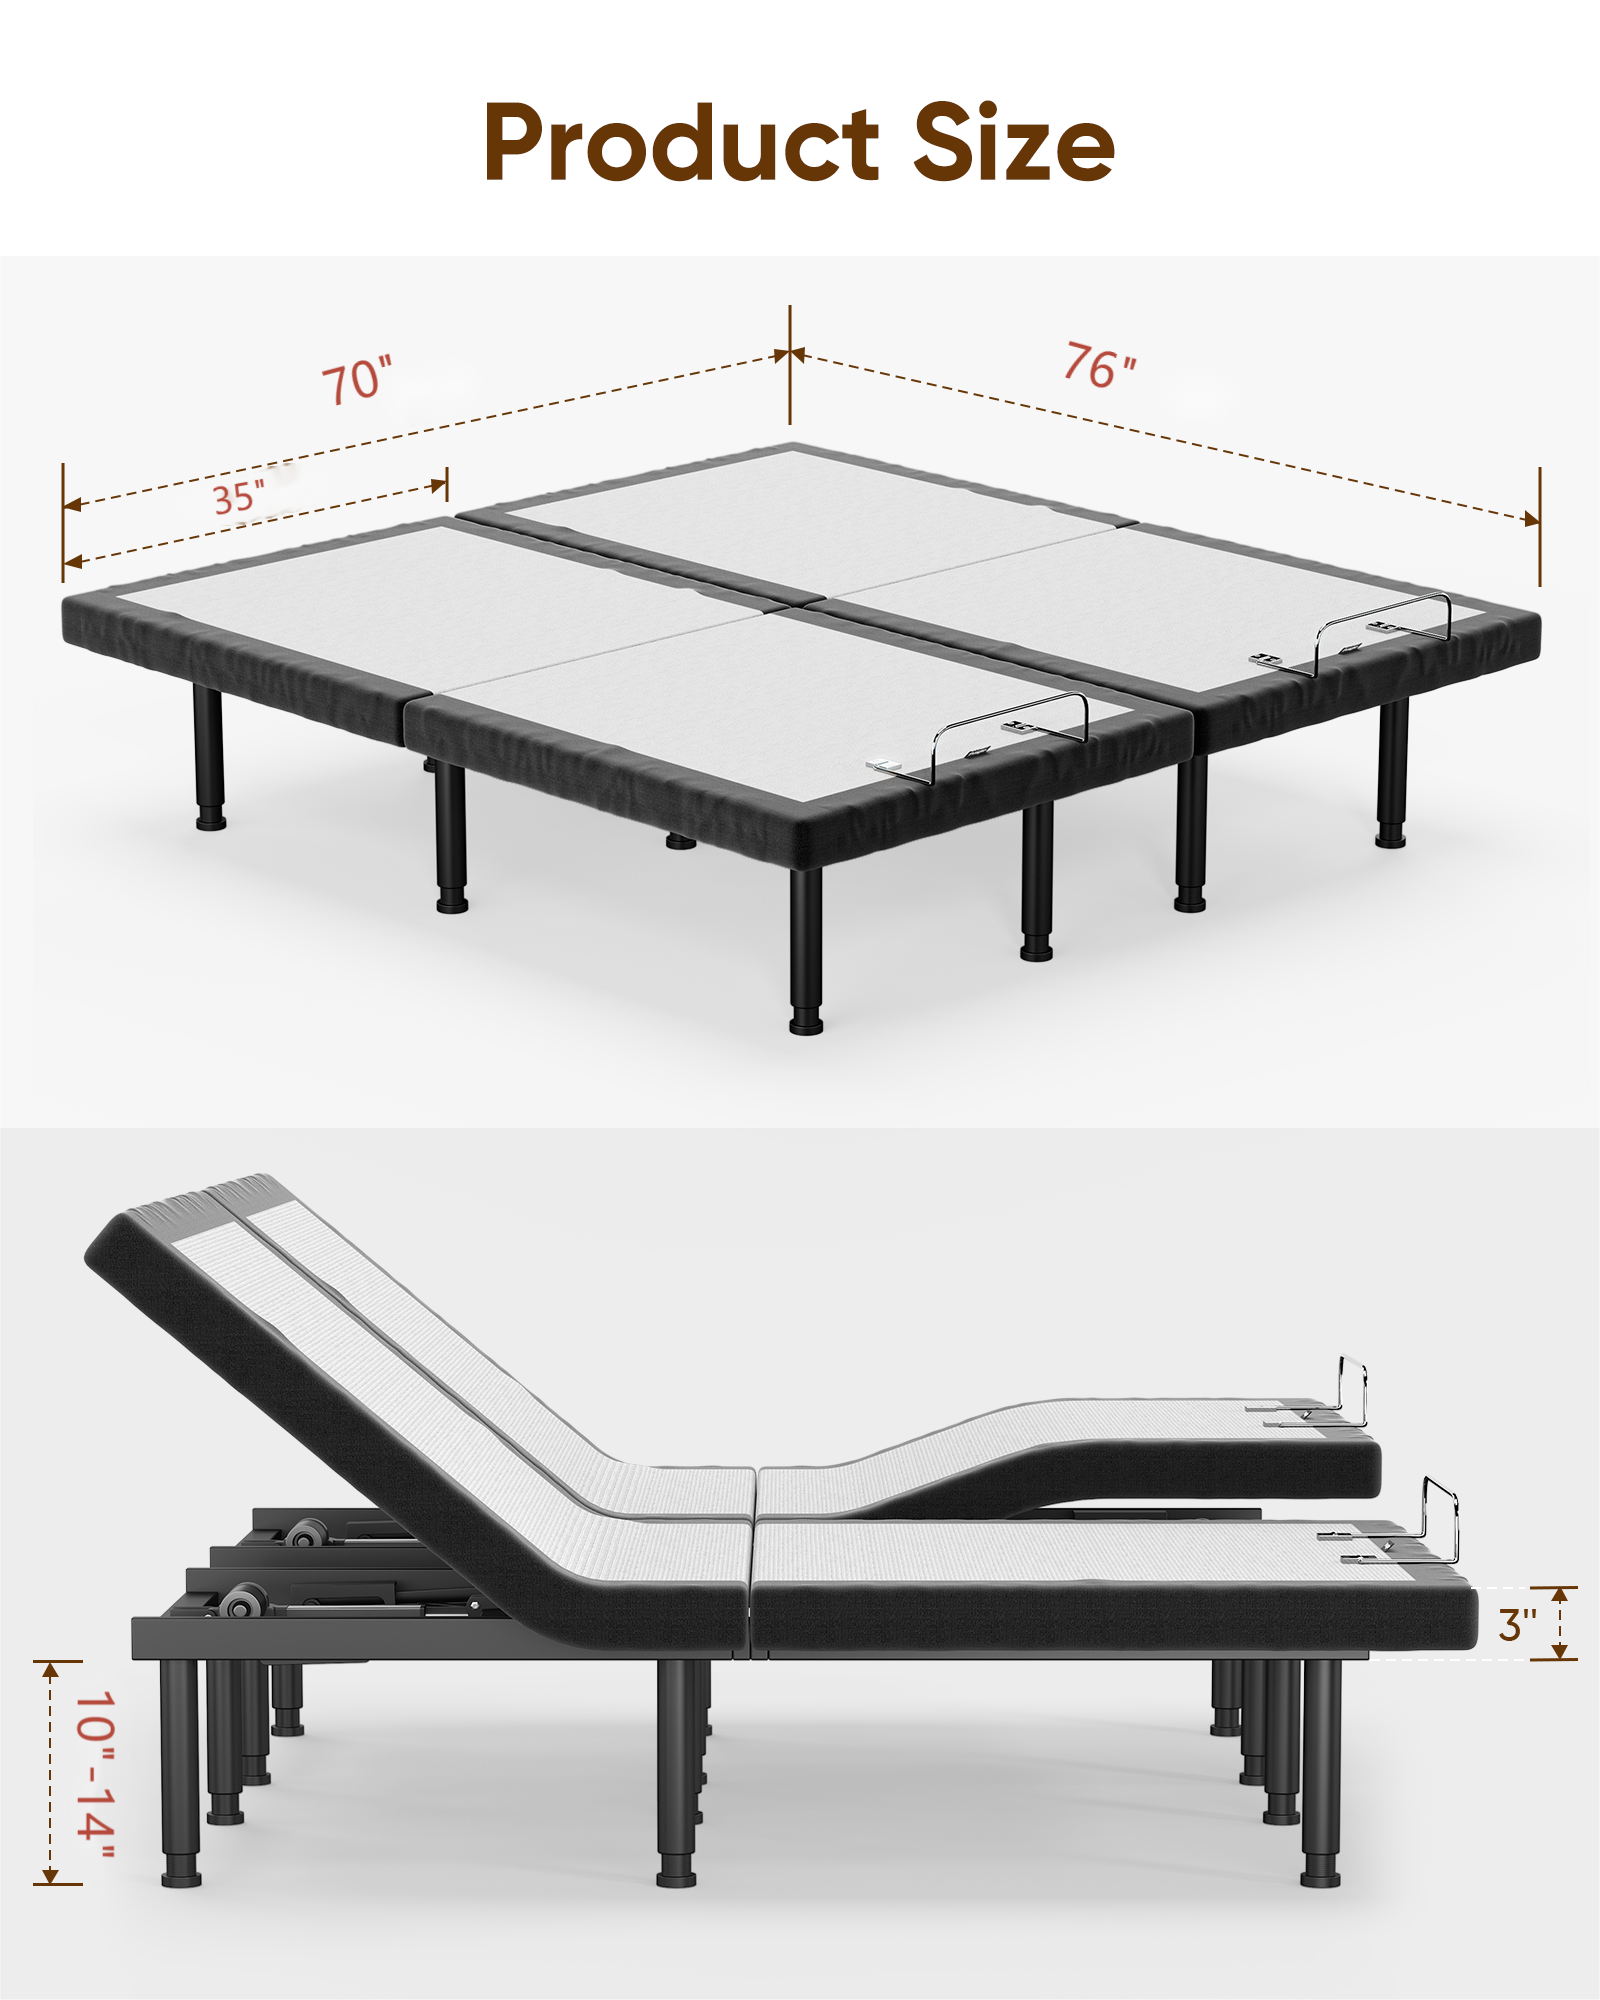 Furgle Split King Size Adjustable Bed Base Frame for Stress Management with Massage, Adjustable Legs, Remote Control - image 2 of 11